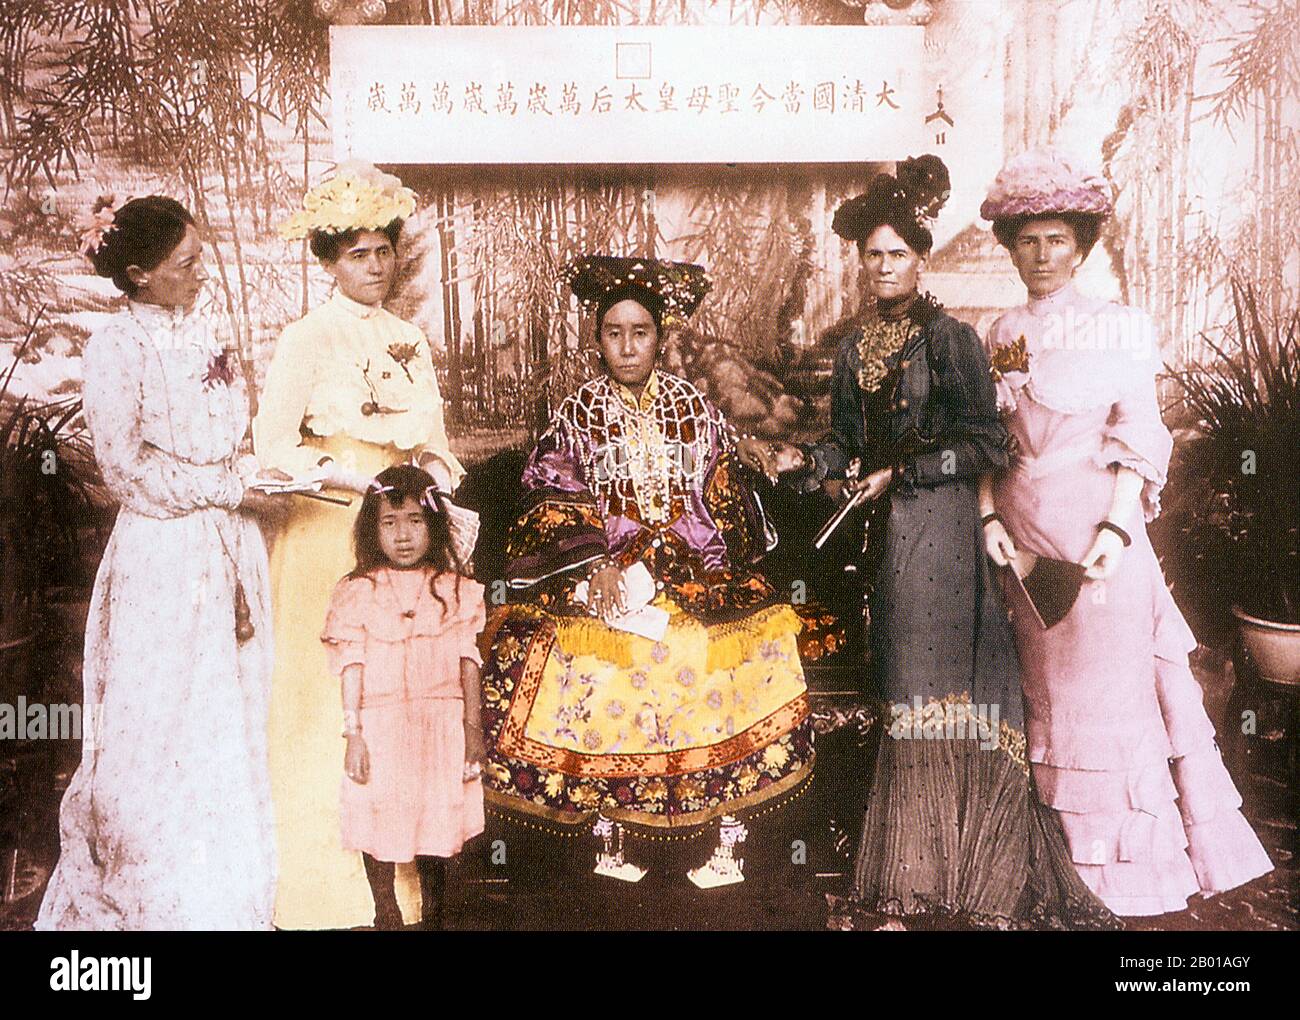 China: Kaiserin Dowager Cixi (29. November 1835 - 15. November 1908) mit den Ehefrauen ausländischer diplomatischer ENYOYS, darunter Sarah Pike Conger, Ehefrau des amerikanischen Ministers der Qing Dynastie China, 1903. Kaiserin Dowager Cixi (Wade–Giles: TZ'U-Hsi) vom Mandschu-Yehe-Nara-Clan war eine mächtige und charismatische Figur, die von 1861 bis zu ihrem Tod 47 Jahre lang de facto die Herrscherin der Mandschu-Qing-Dynastie in China wurde. Ursprünglich eine Konkubine des Xianfeng-Imperators, gebar sie einen Sohn, Zaichun, der zum Tongzhi-Kaiser werden sollte. Sie festigte die Macht und ernannte sich zu ihrem Sohn. Stockfoto